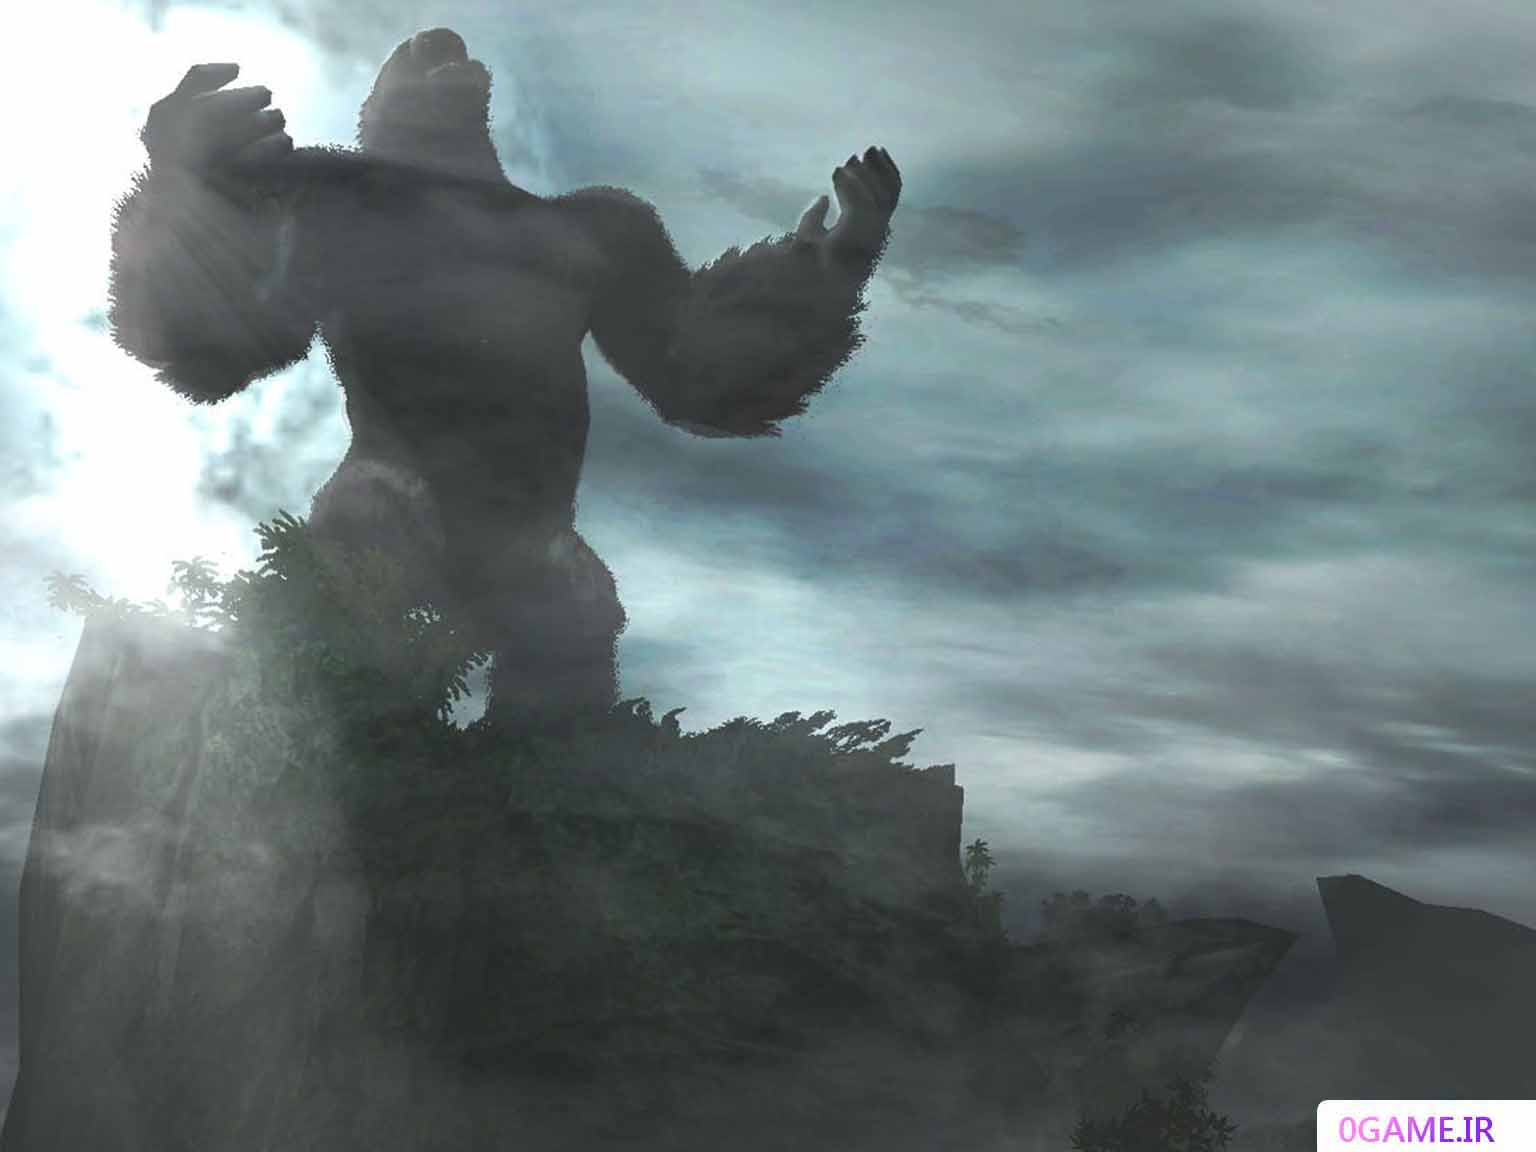 دانلود بازی (Peter Jackson's King Kong) نسخه کامل برای کامپیوتر